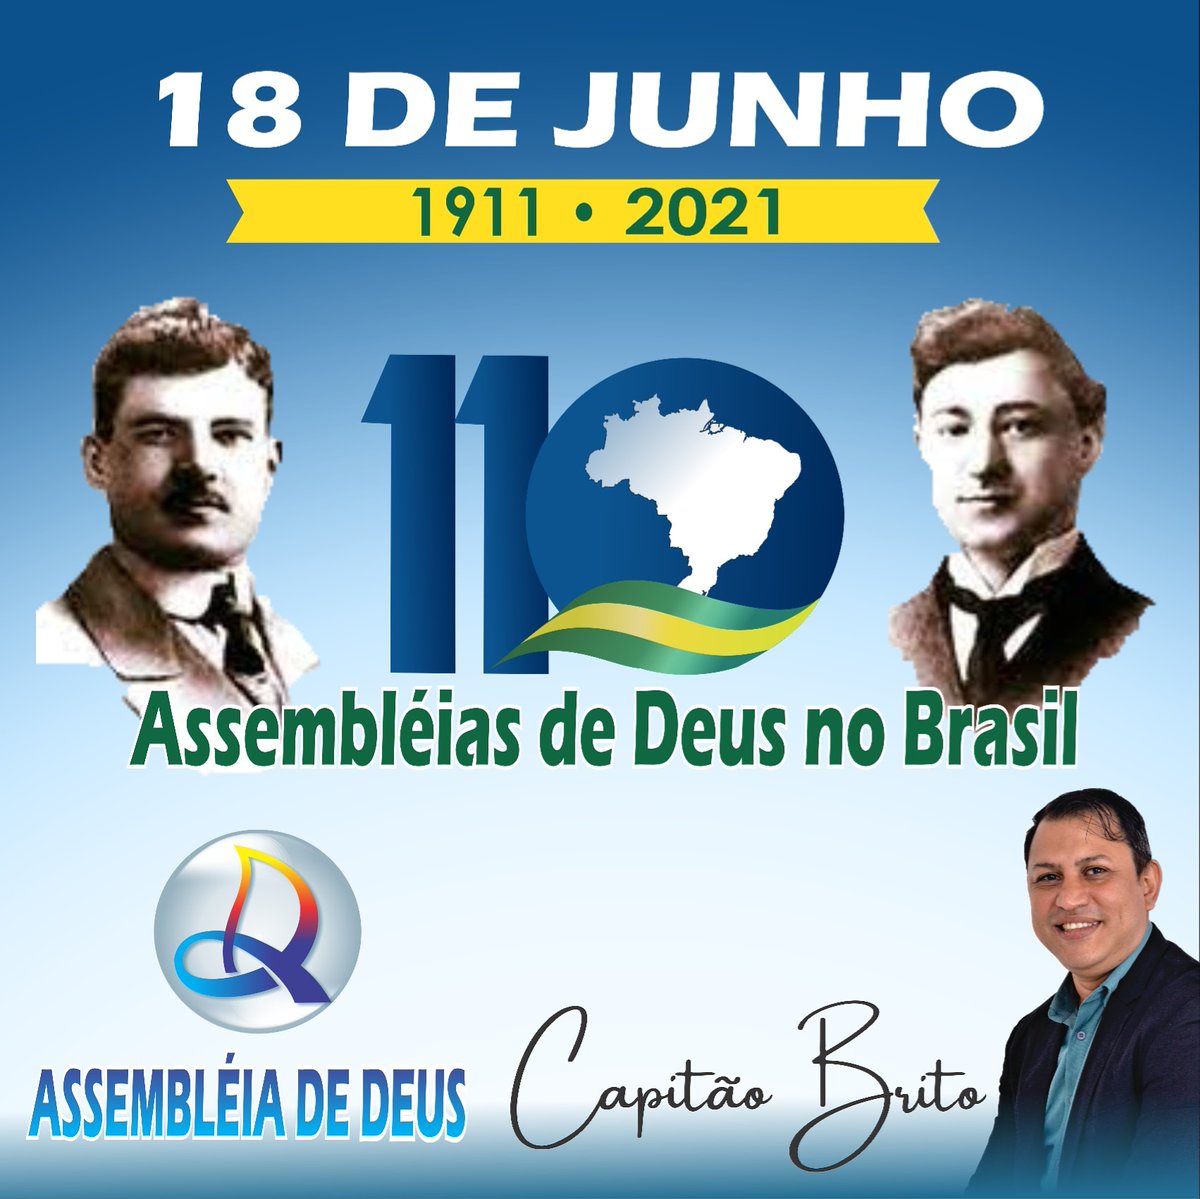 Minha homenagem a Igreja que eu faço parte pelos seus 110 anos no Brasil.
Parabéns @adpboficial @assembleia

#AssembleiaDeDeus
@Flordelotus2021
@B38GrupoOficial
@CRosa_Artes
@b38_8
@B38Bolsonaro